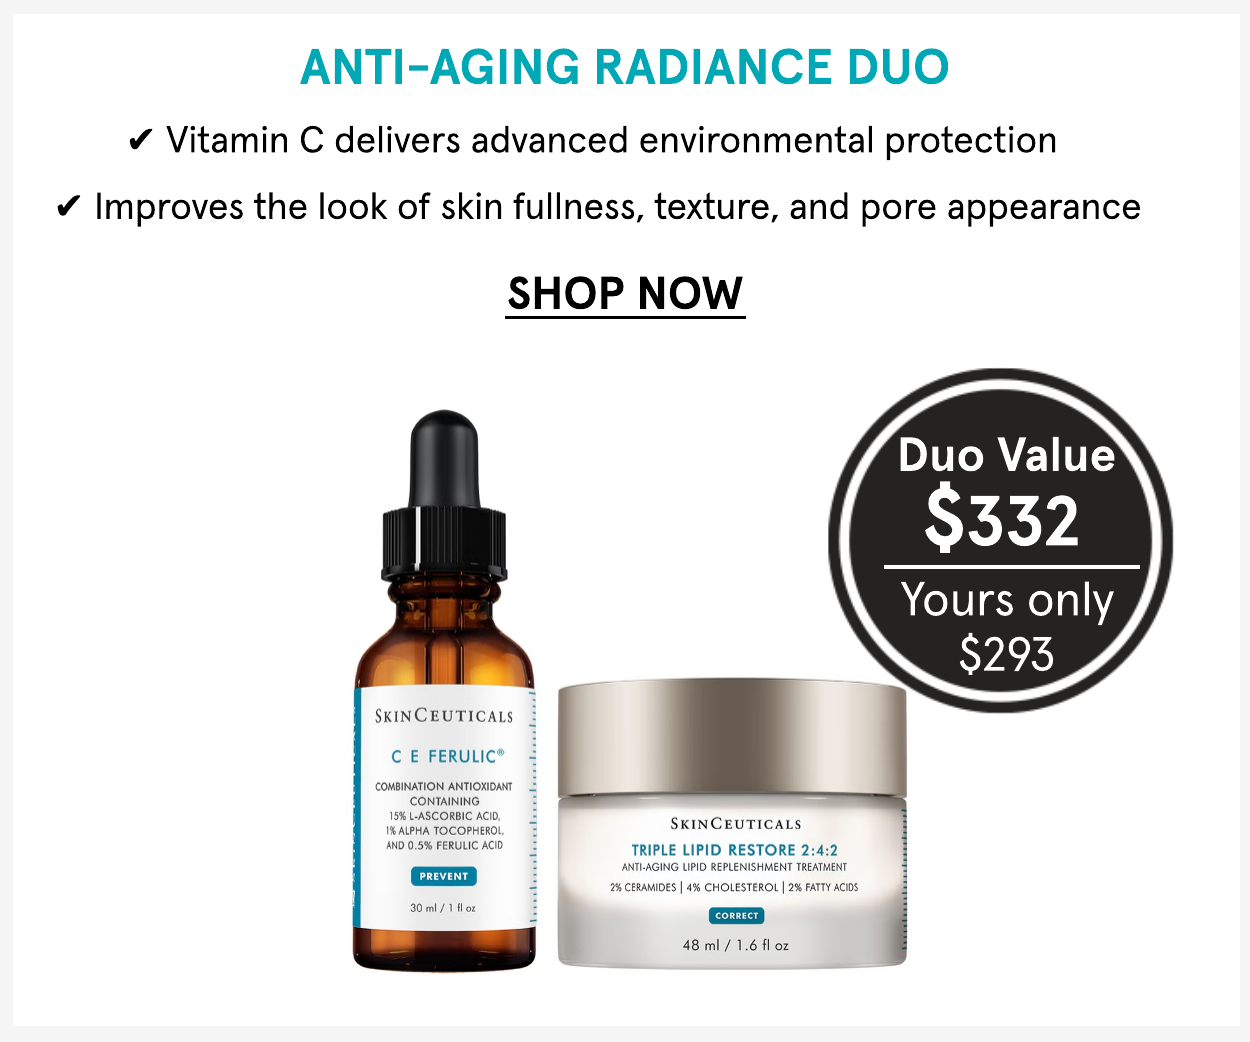 SkinCeuticals Anti-Aging Radiance Duo with C E Ferulic Vitamin C